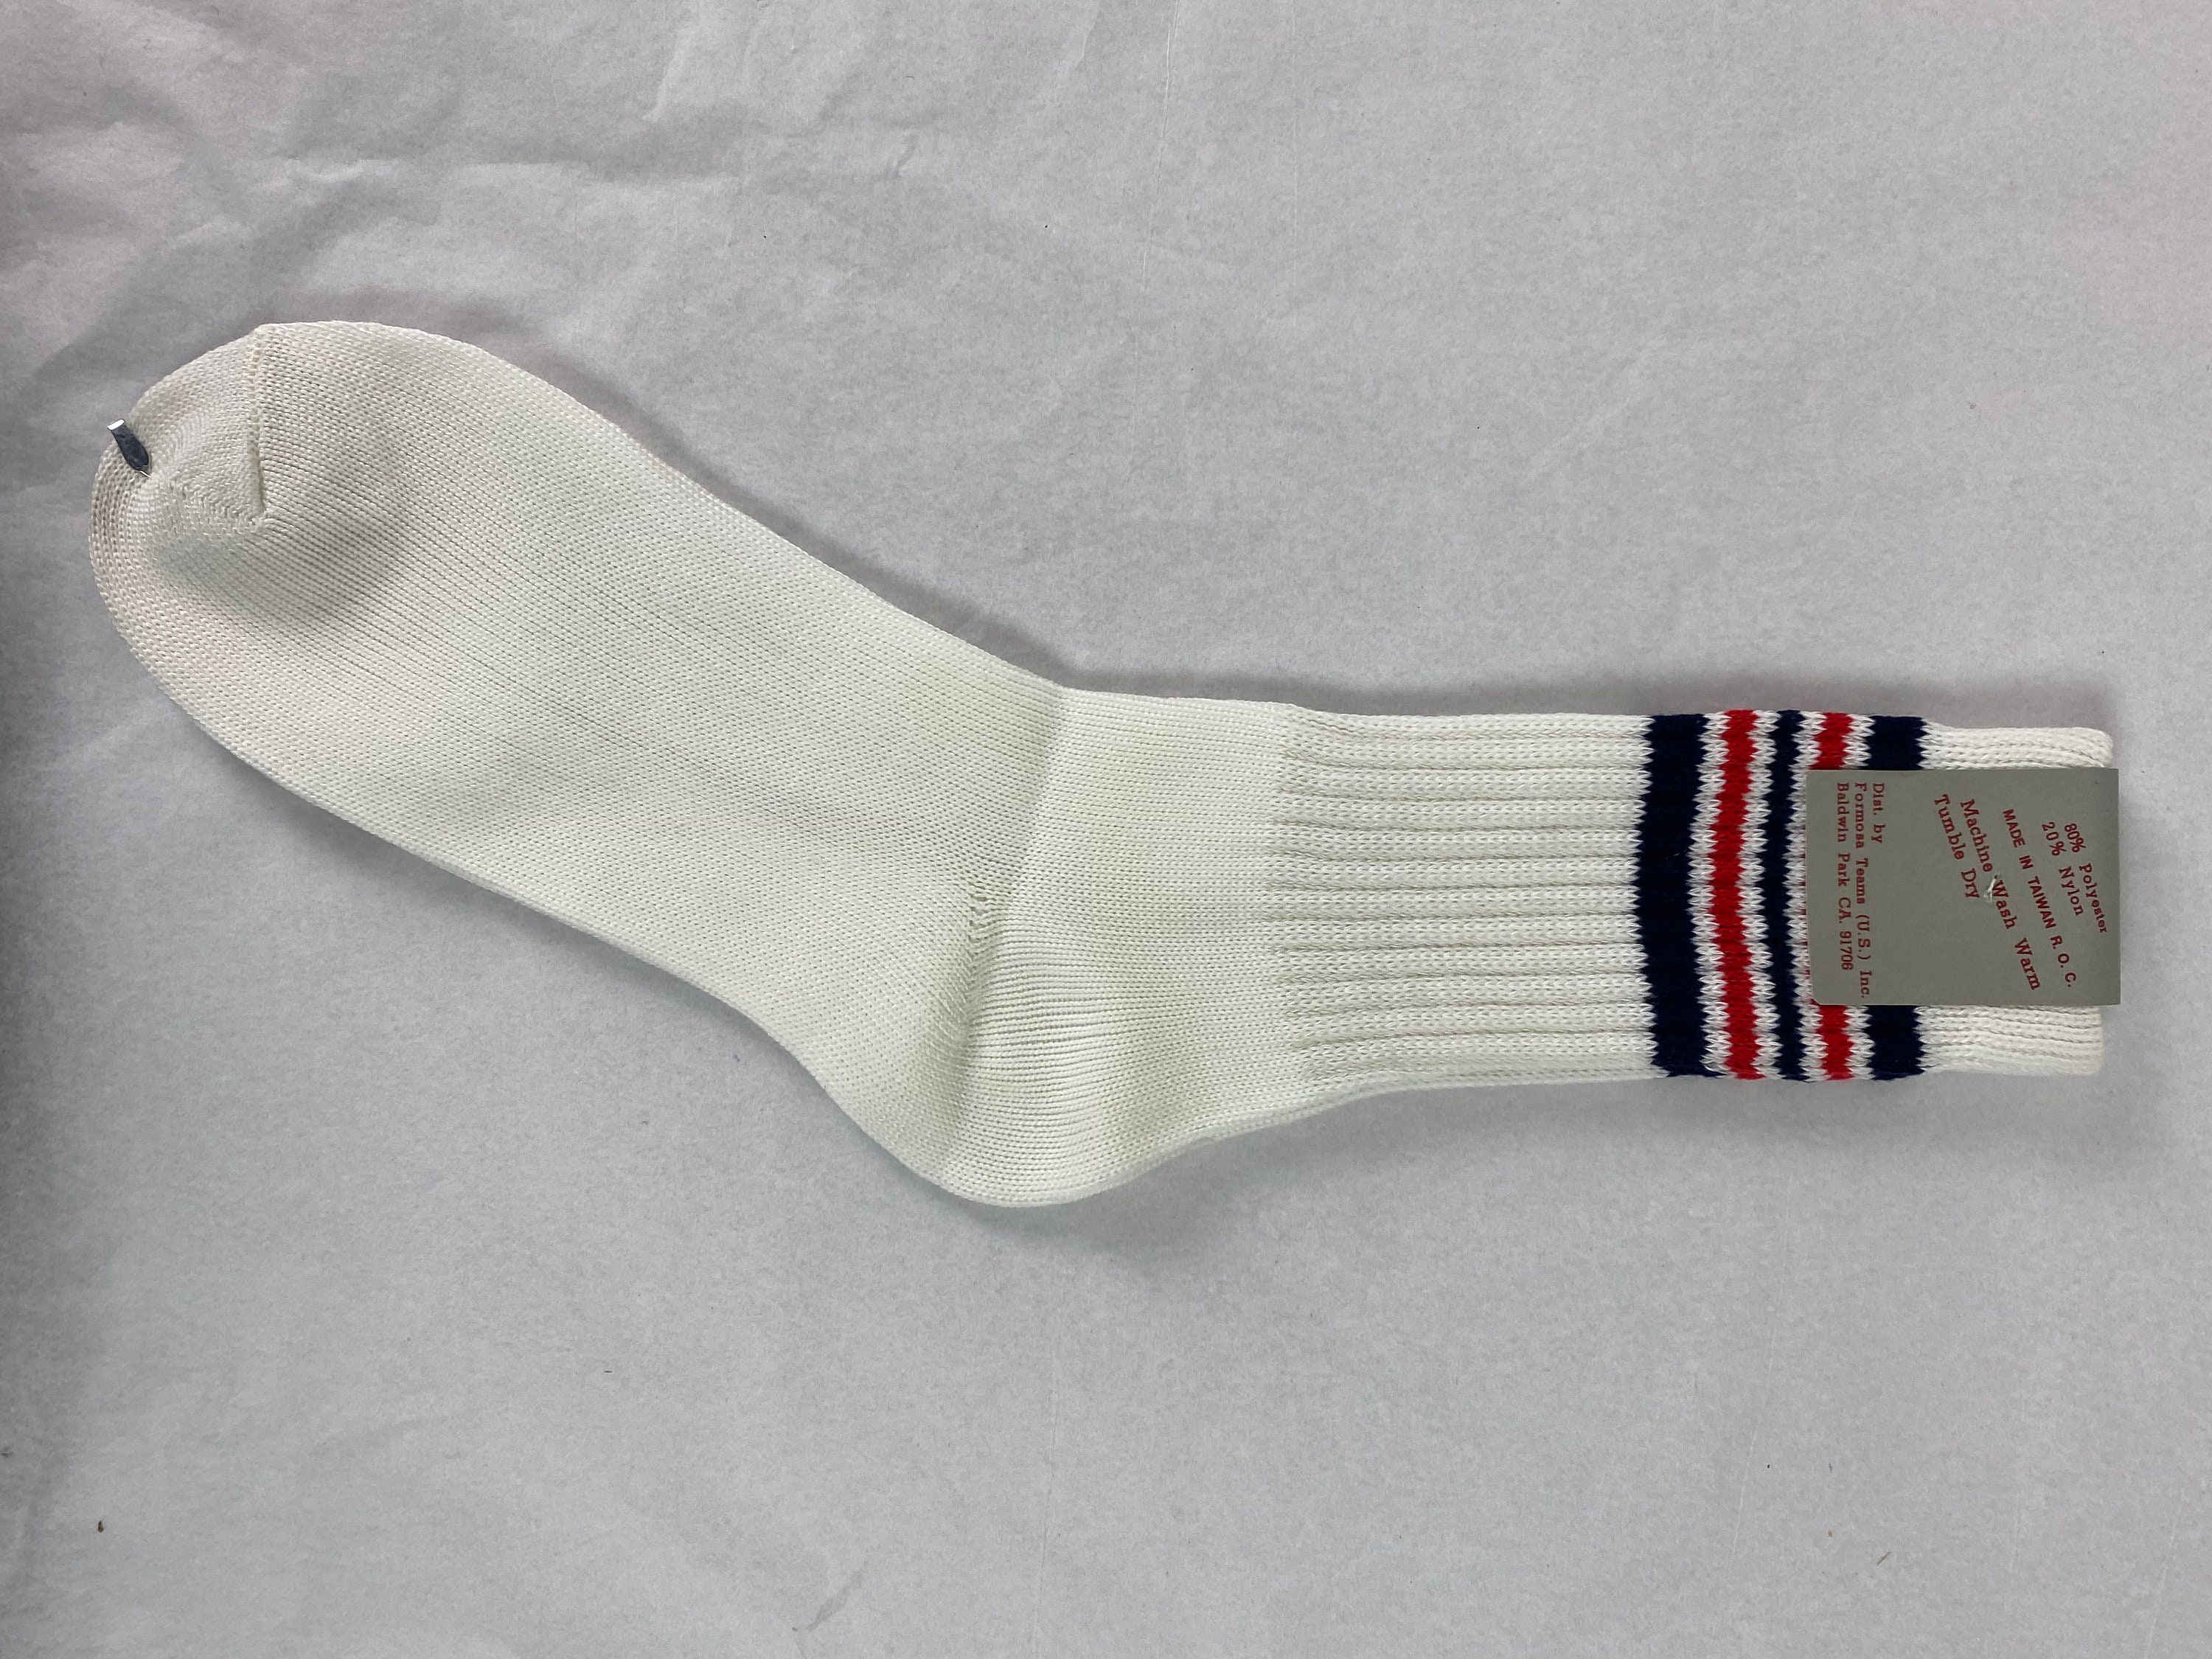 Vintage Socks 1960s Socks Tube Socks Formosa Teams Socks - Etsy